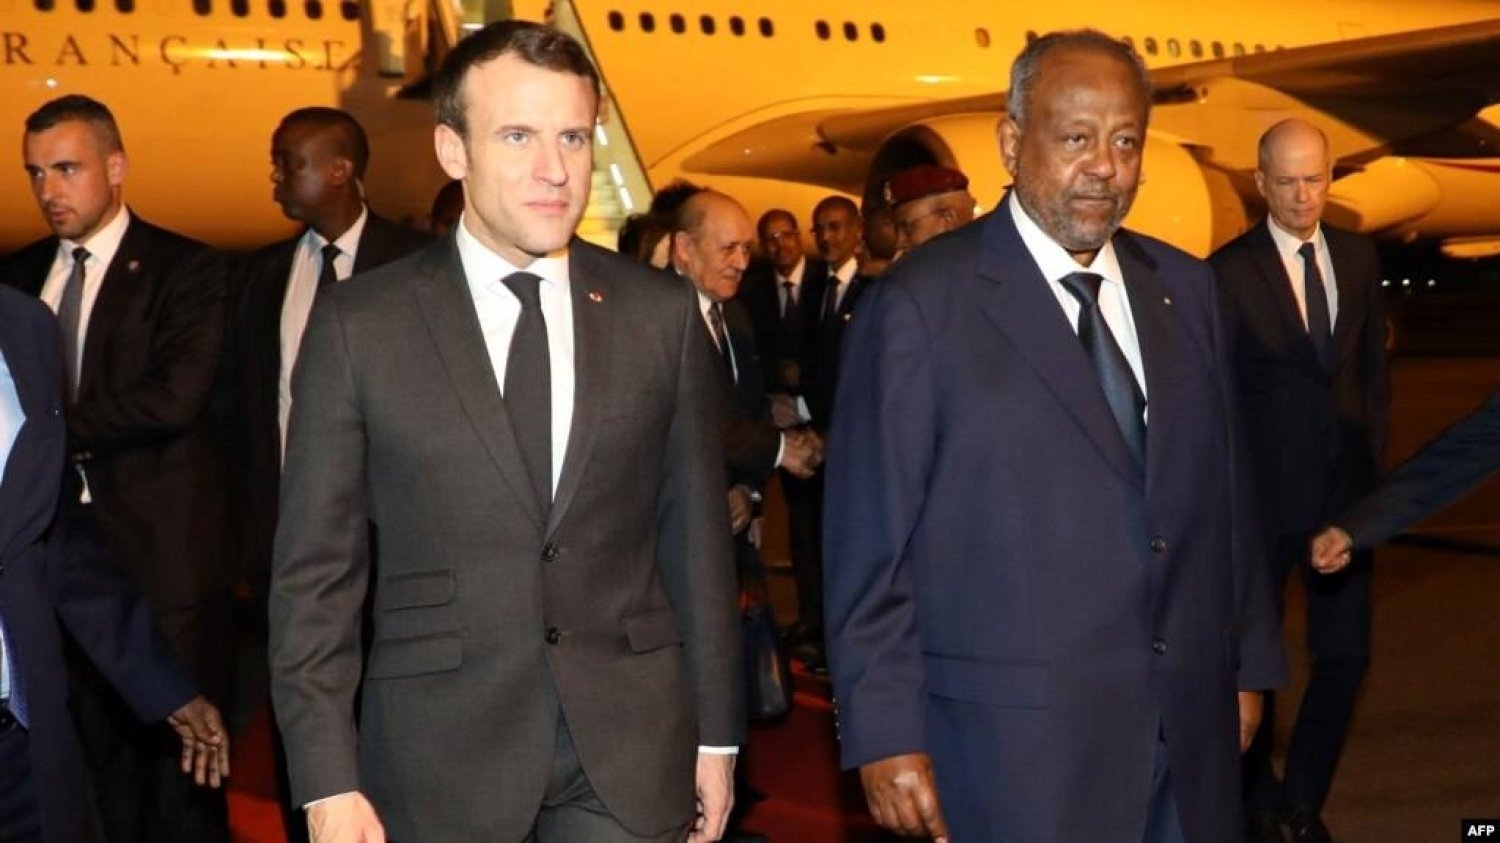 فرنسا وجيبوتي لتجديد شراكتهما الدفاعية